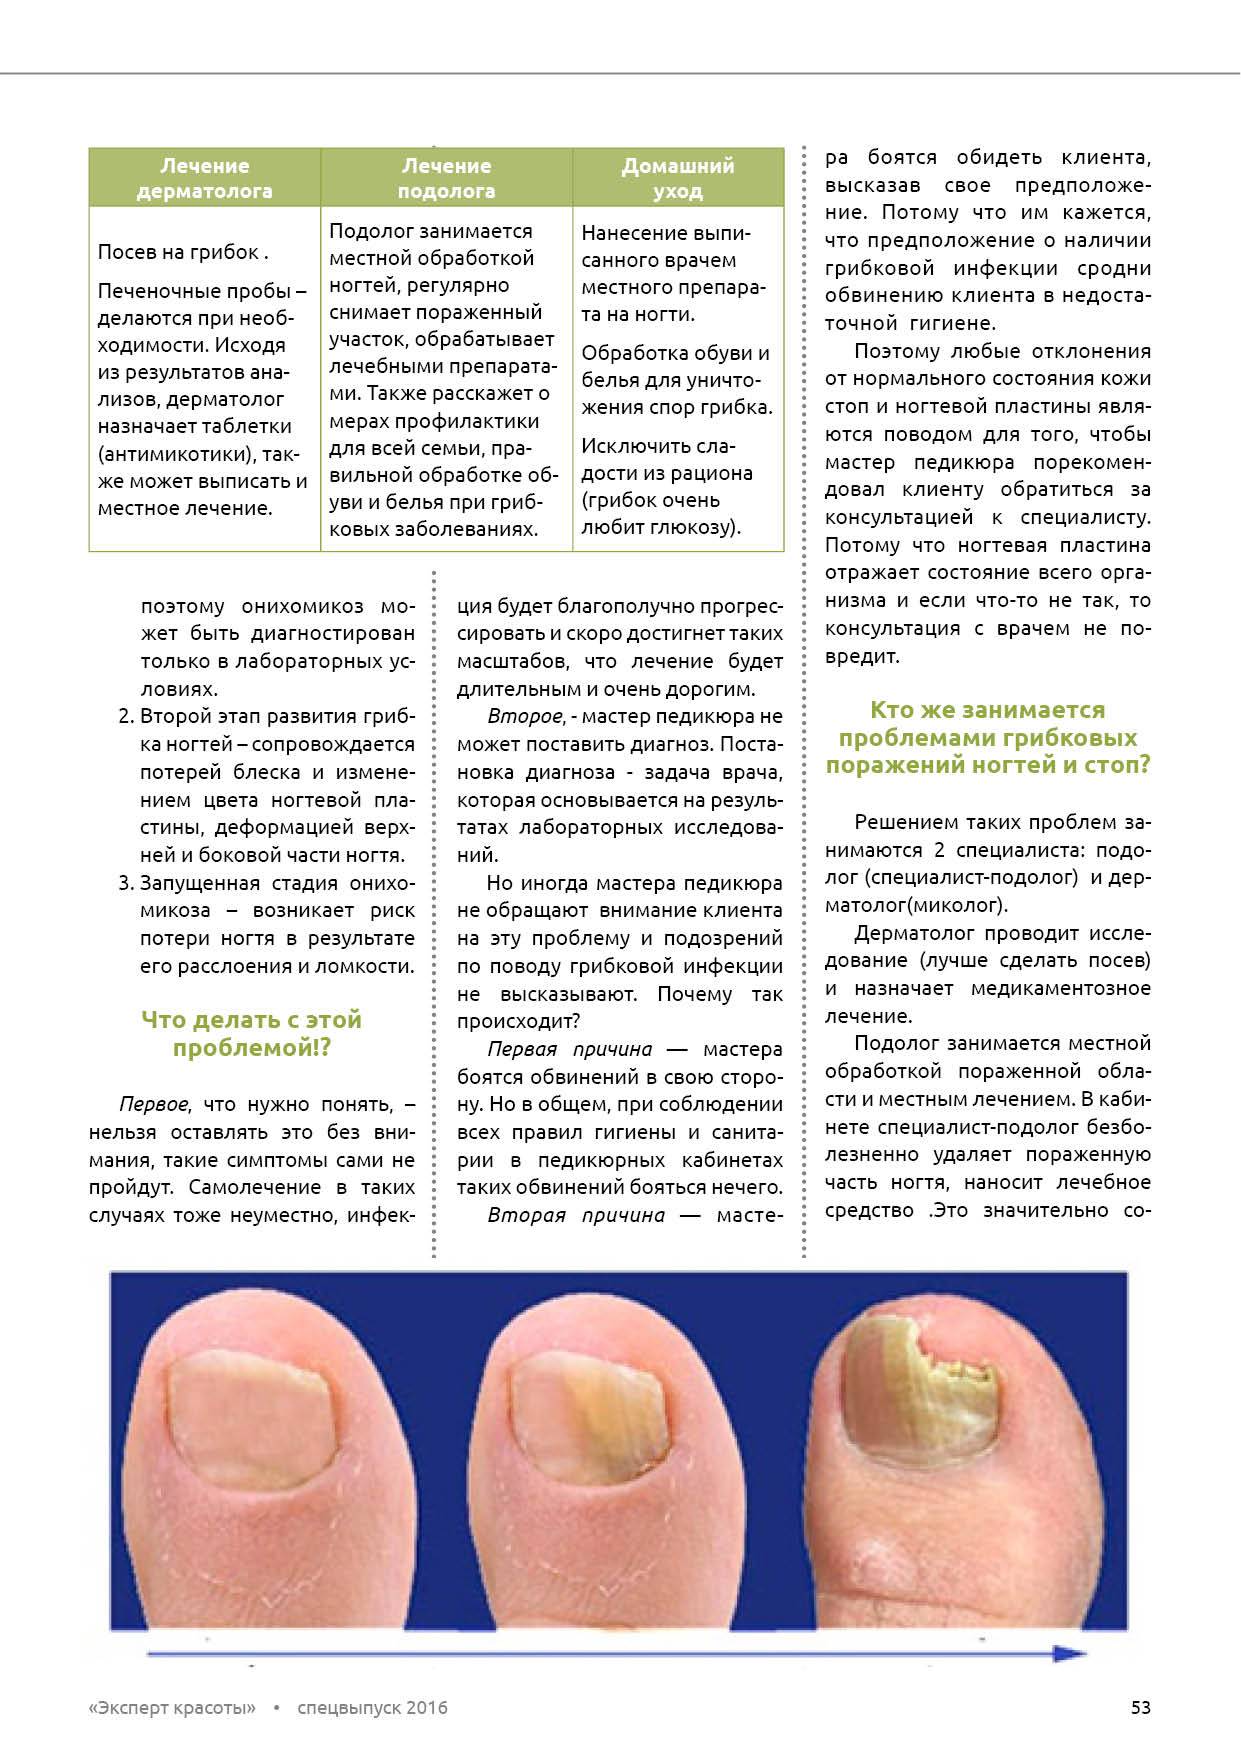 Лечение грибка ногтя врач. Грибковые заболевания ногтей схема. Схема лечения (онихомикоз) онихомикоз ногтей. Онихомикоз ( обработка грибковых ногтей). Схема лечения грибкового поражения ногтей.